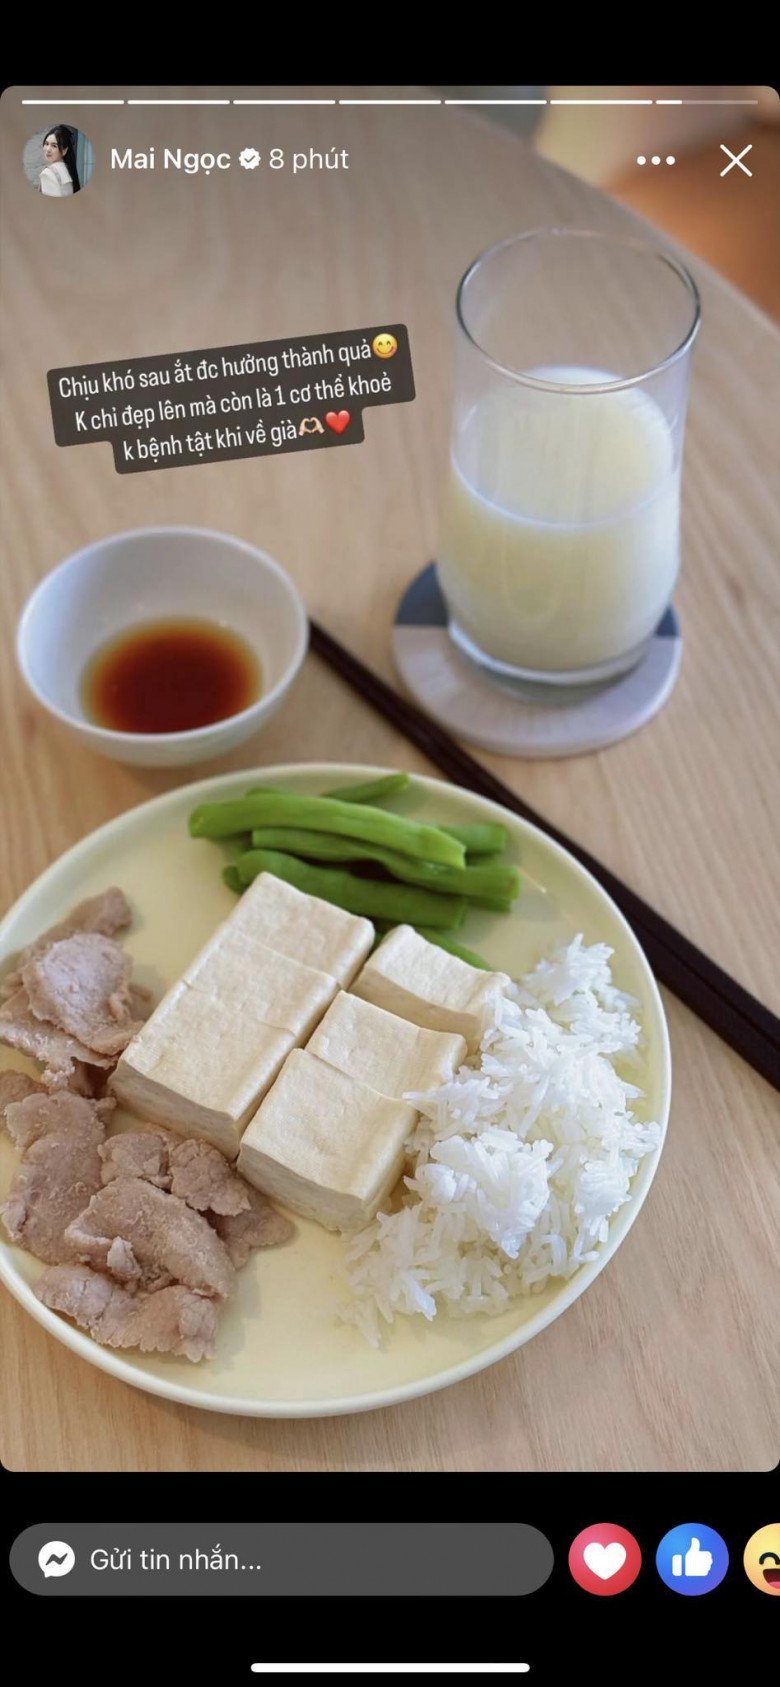 MC Mai Ngọc khoe bữa ăn giảm cân có phần đạm bạc nhưng vẫn đảm bảo cung cấp đủ chất cho cơ thể.